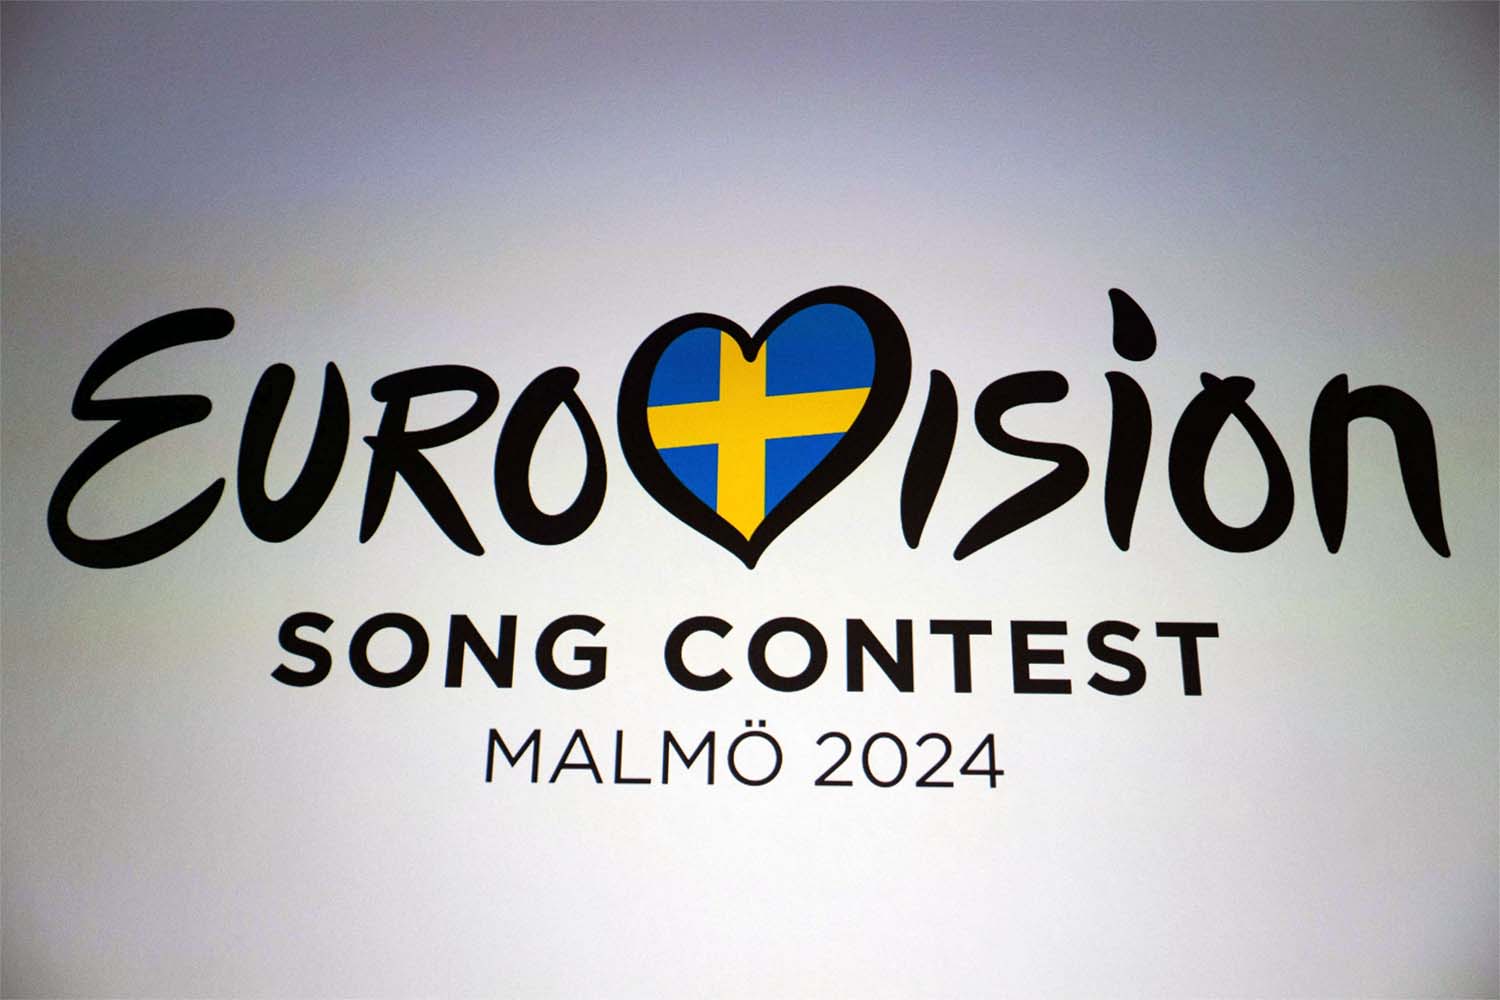 Eurovision bills itself as a non-political event